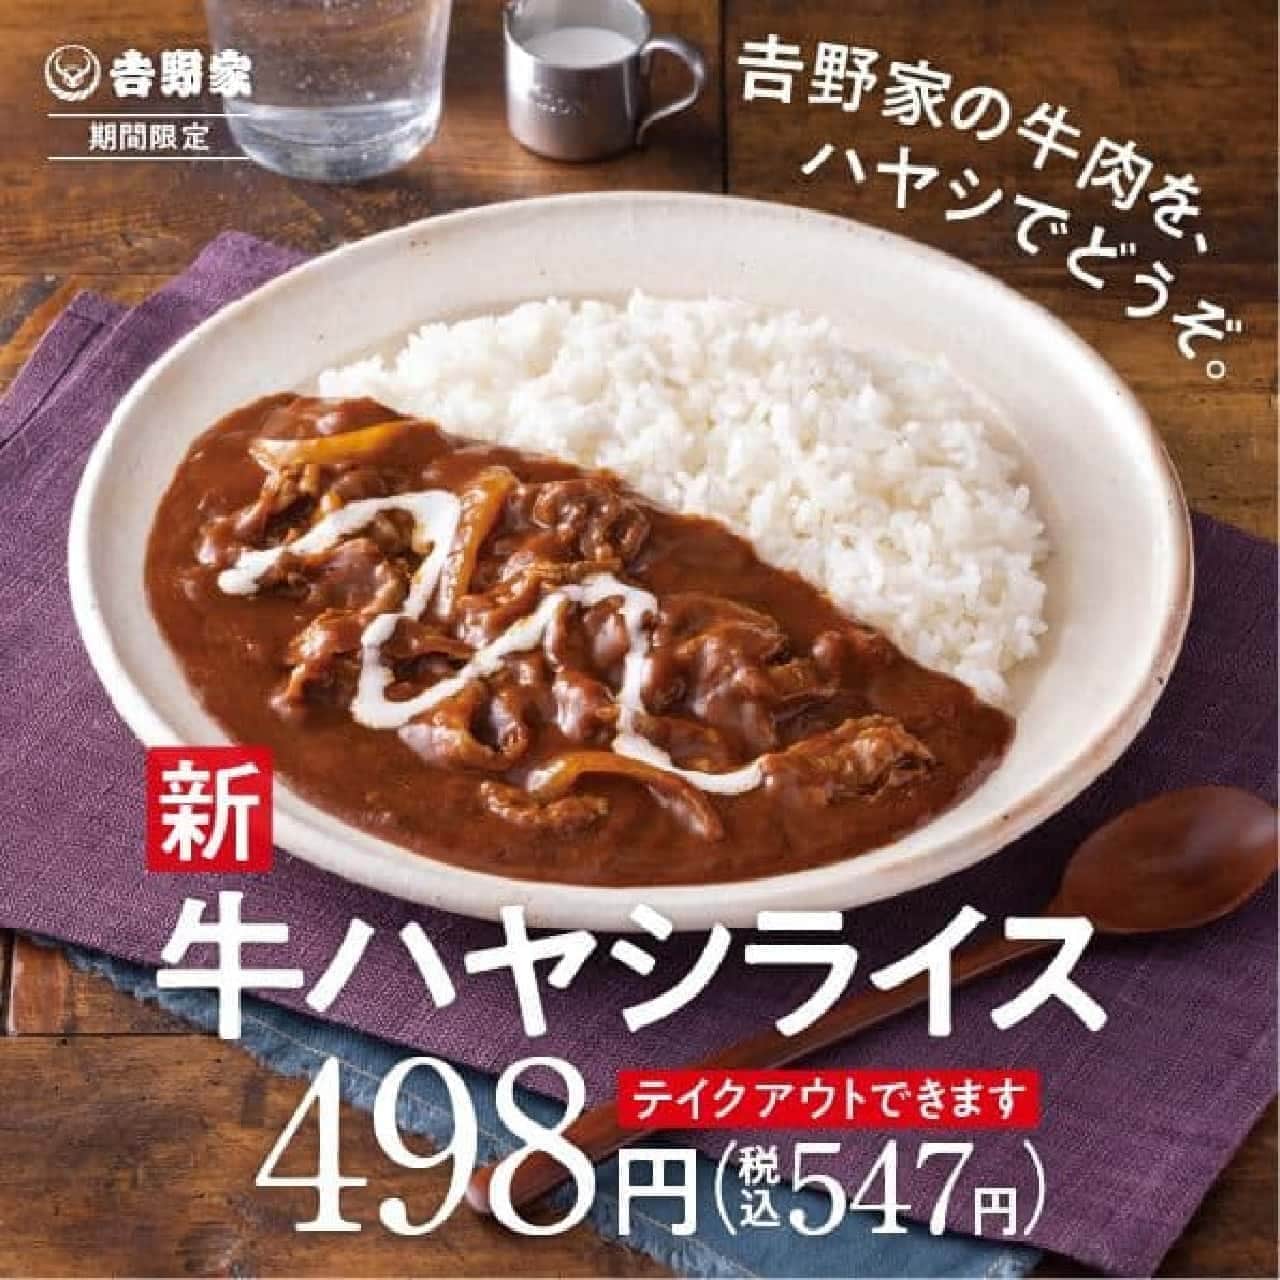 Yoshinoya "Beef Hayashi Rice"